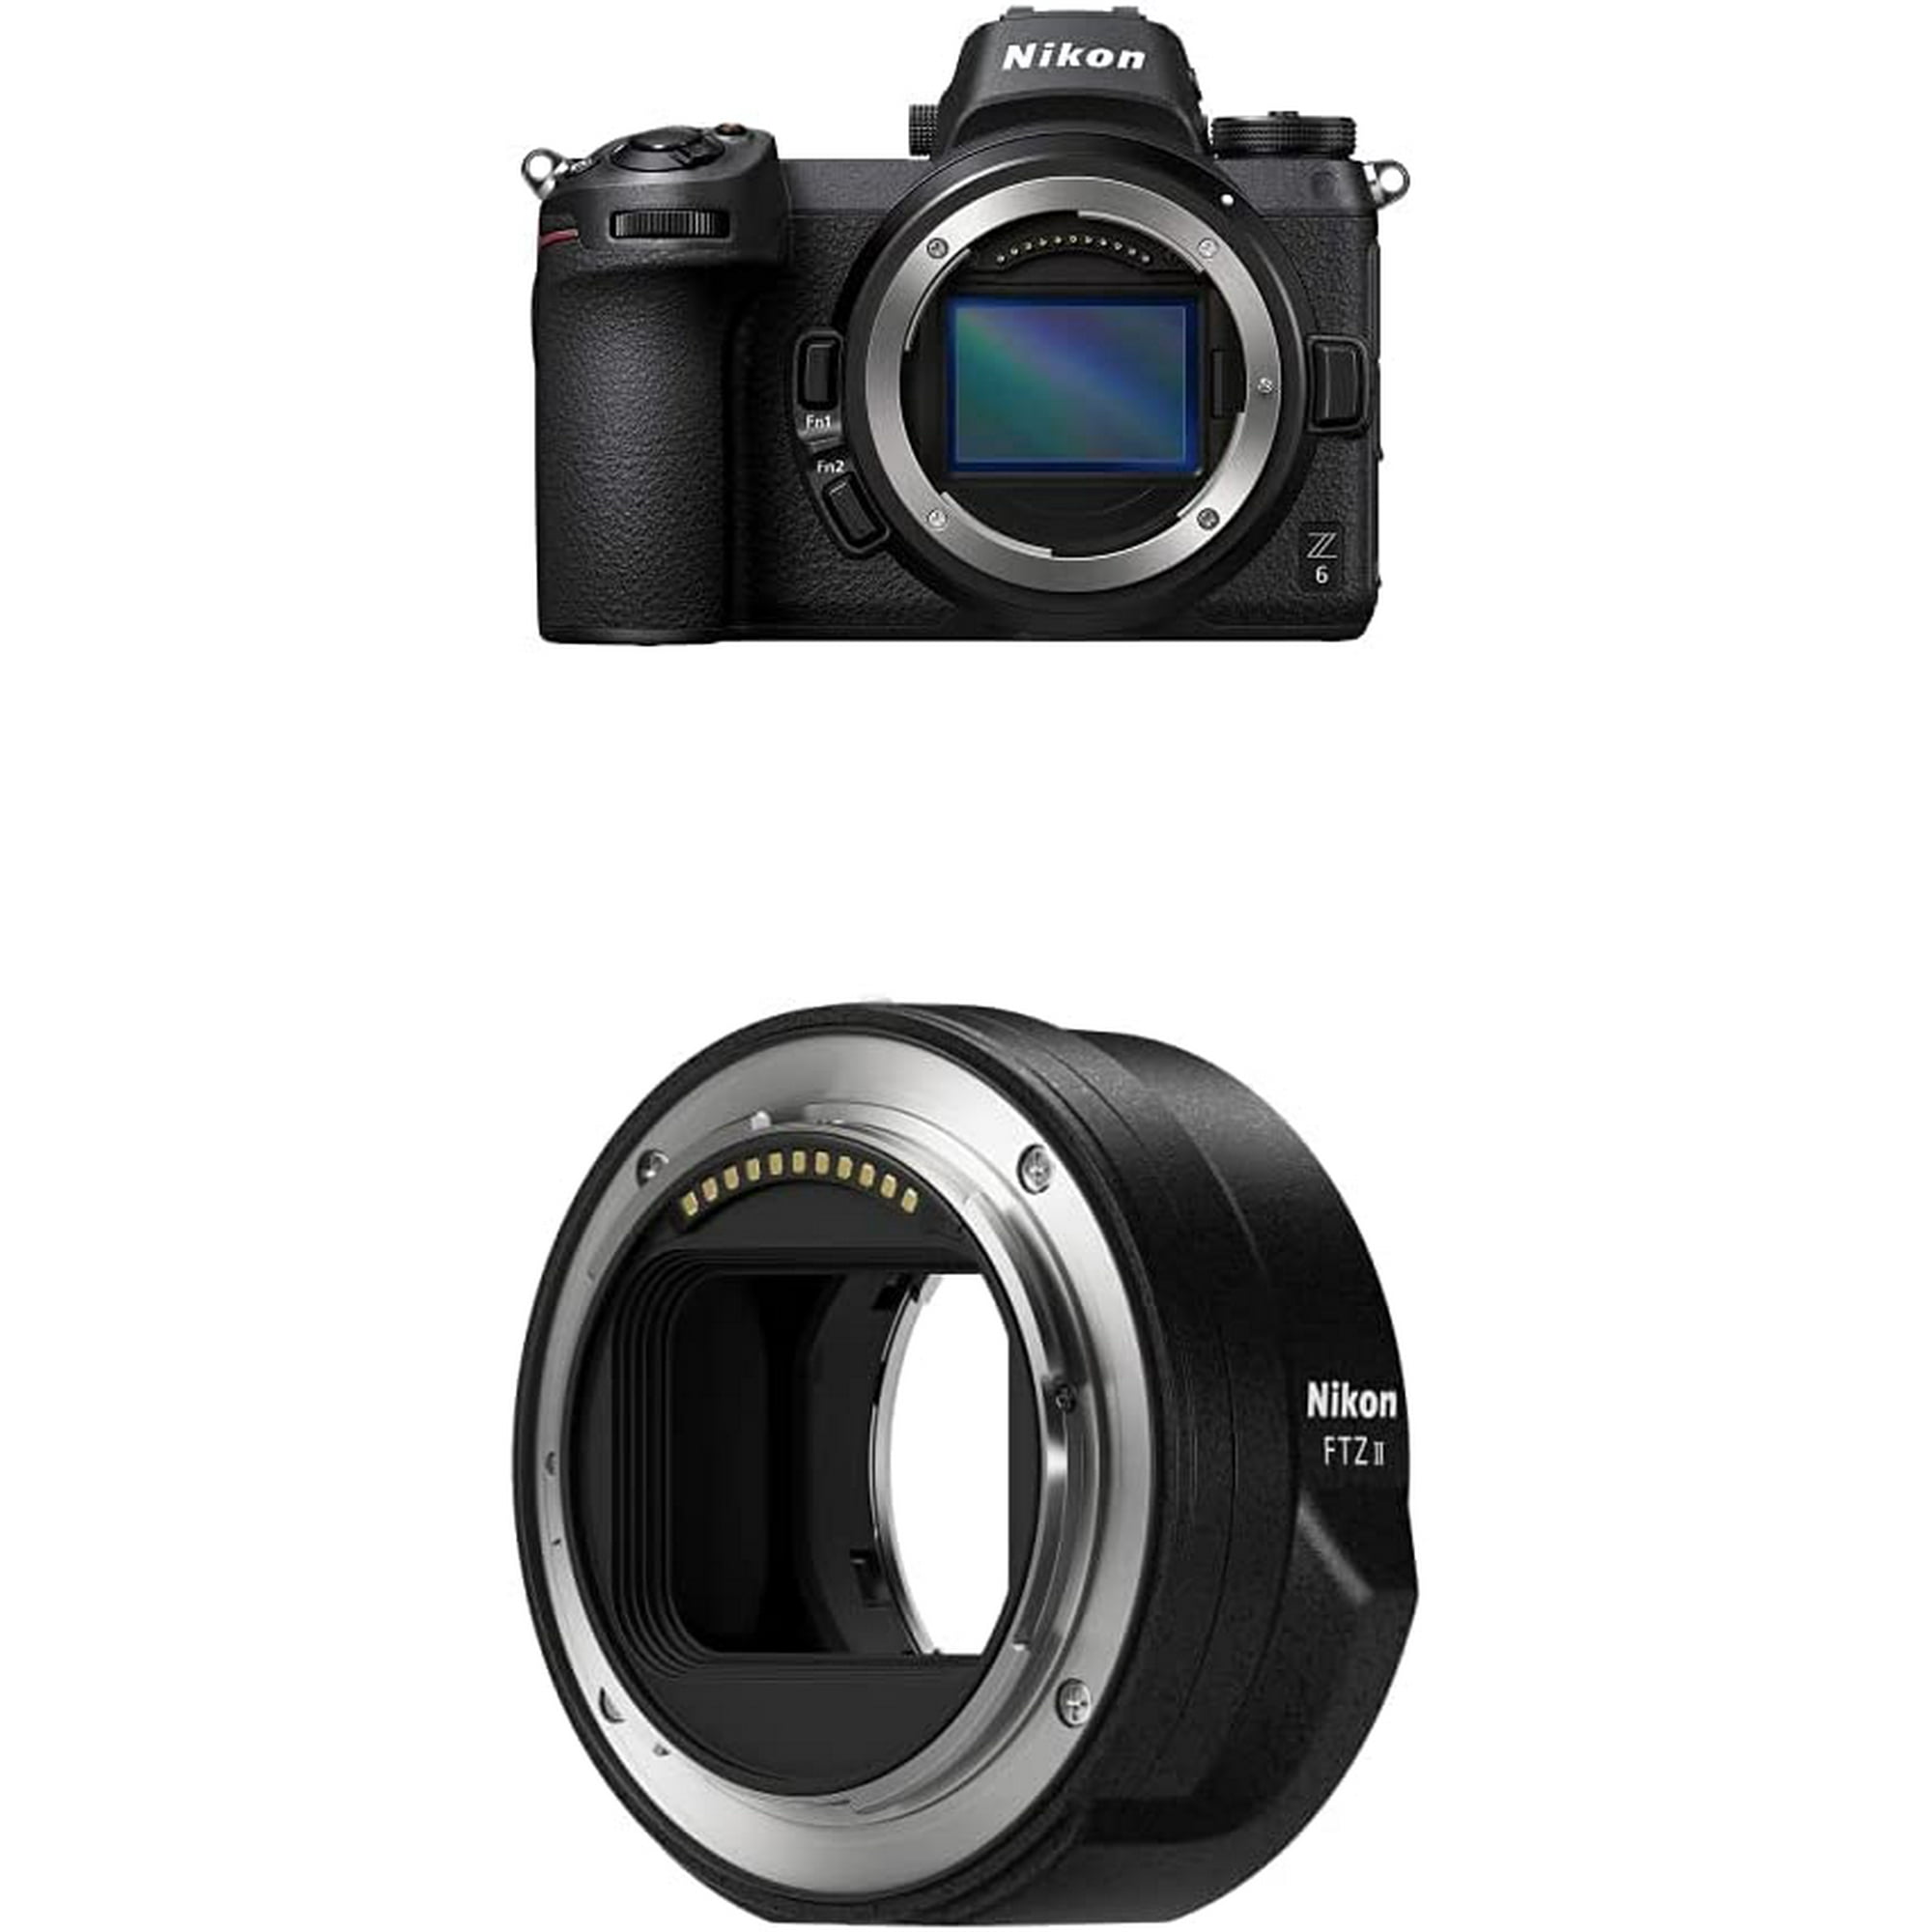 Nikon Z6 Full Frame Mirrorless Camera Body with Nikon Mount